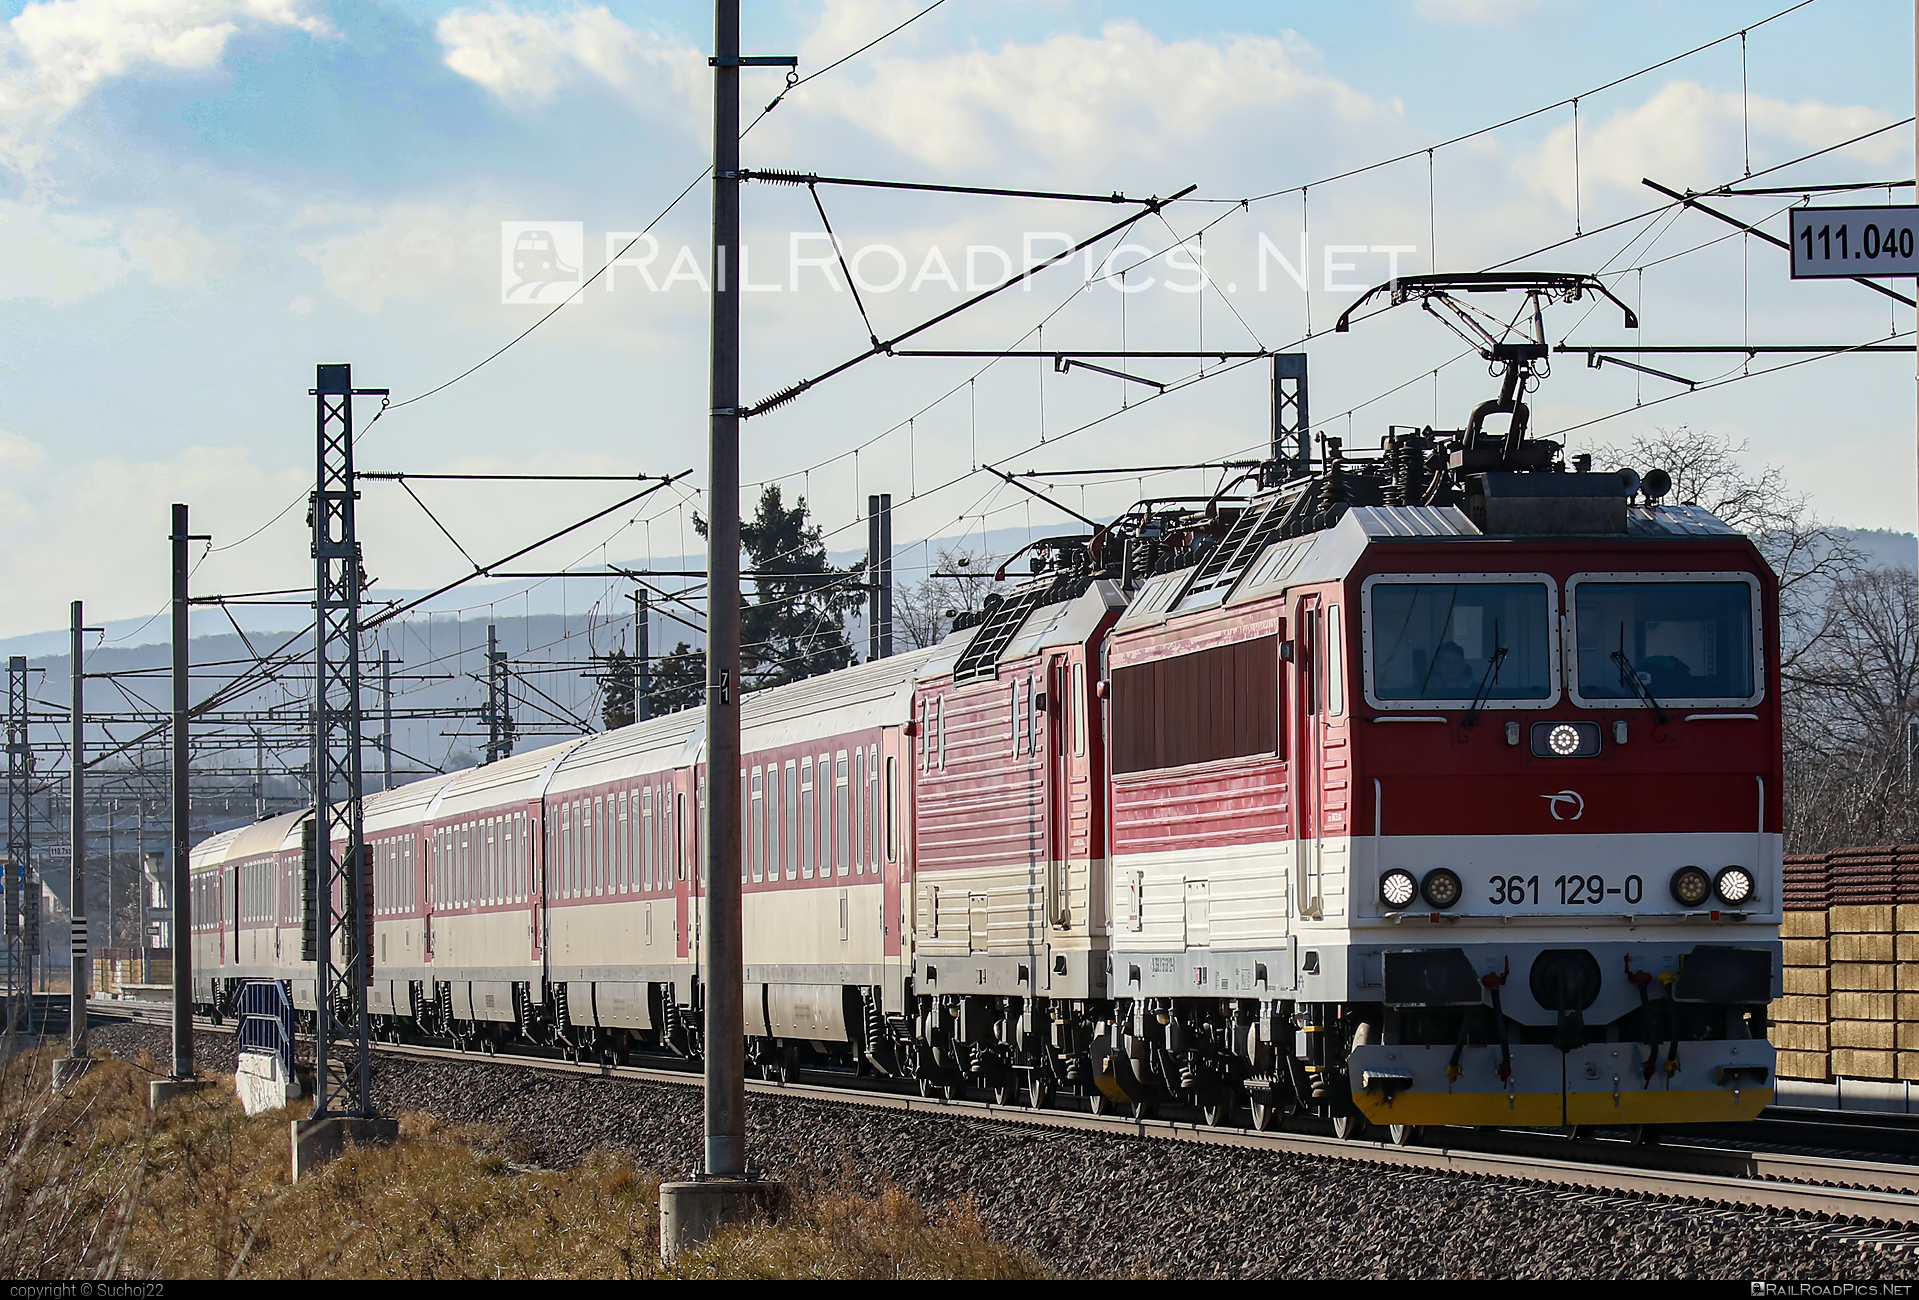 ŽOS Vrútky Class 361.1 - 361 129-0 operated by Železničná Spoločnost' Slovensko, a.s. #ZeleznicnaSpolocnostSlovensko #locomotive361 #locomotive3611 #zosvrutky #zssk